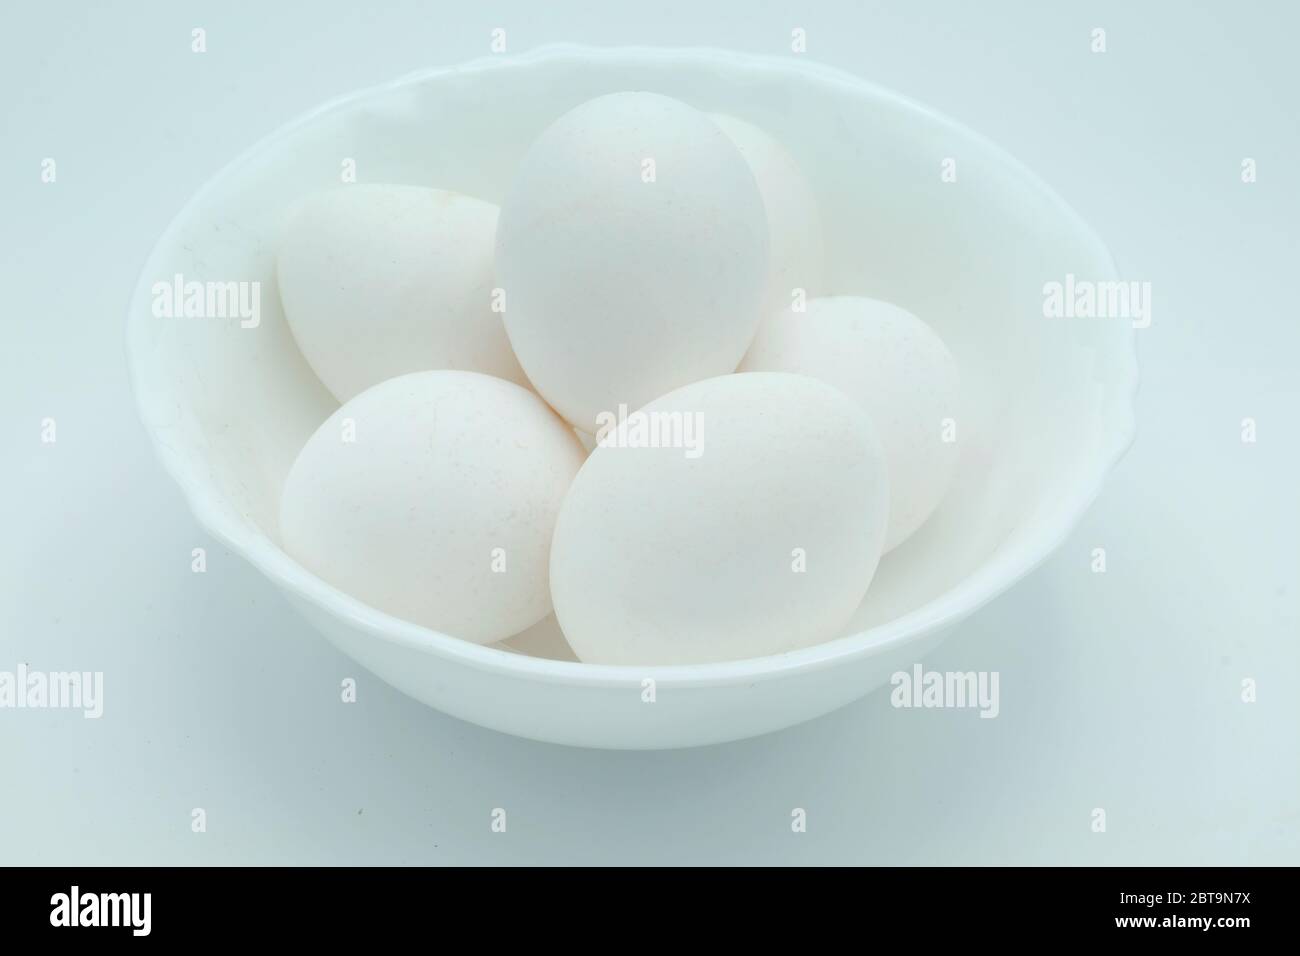 A white bowl full of white free-range eggs on a white background Stock Photo